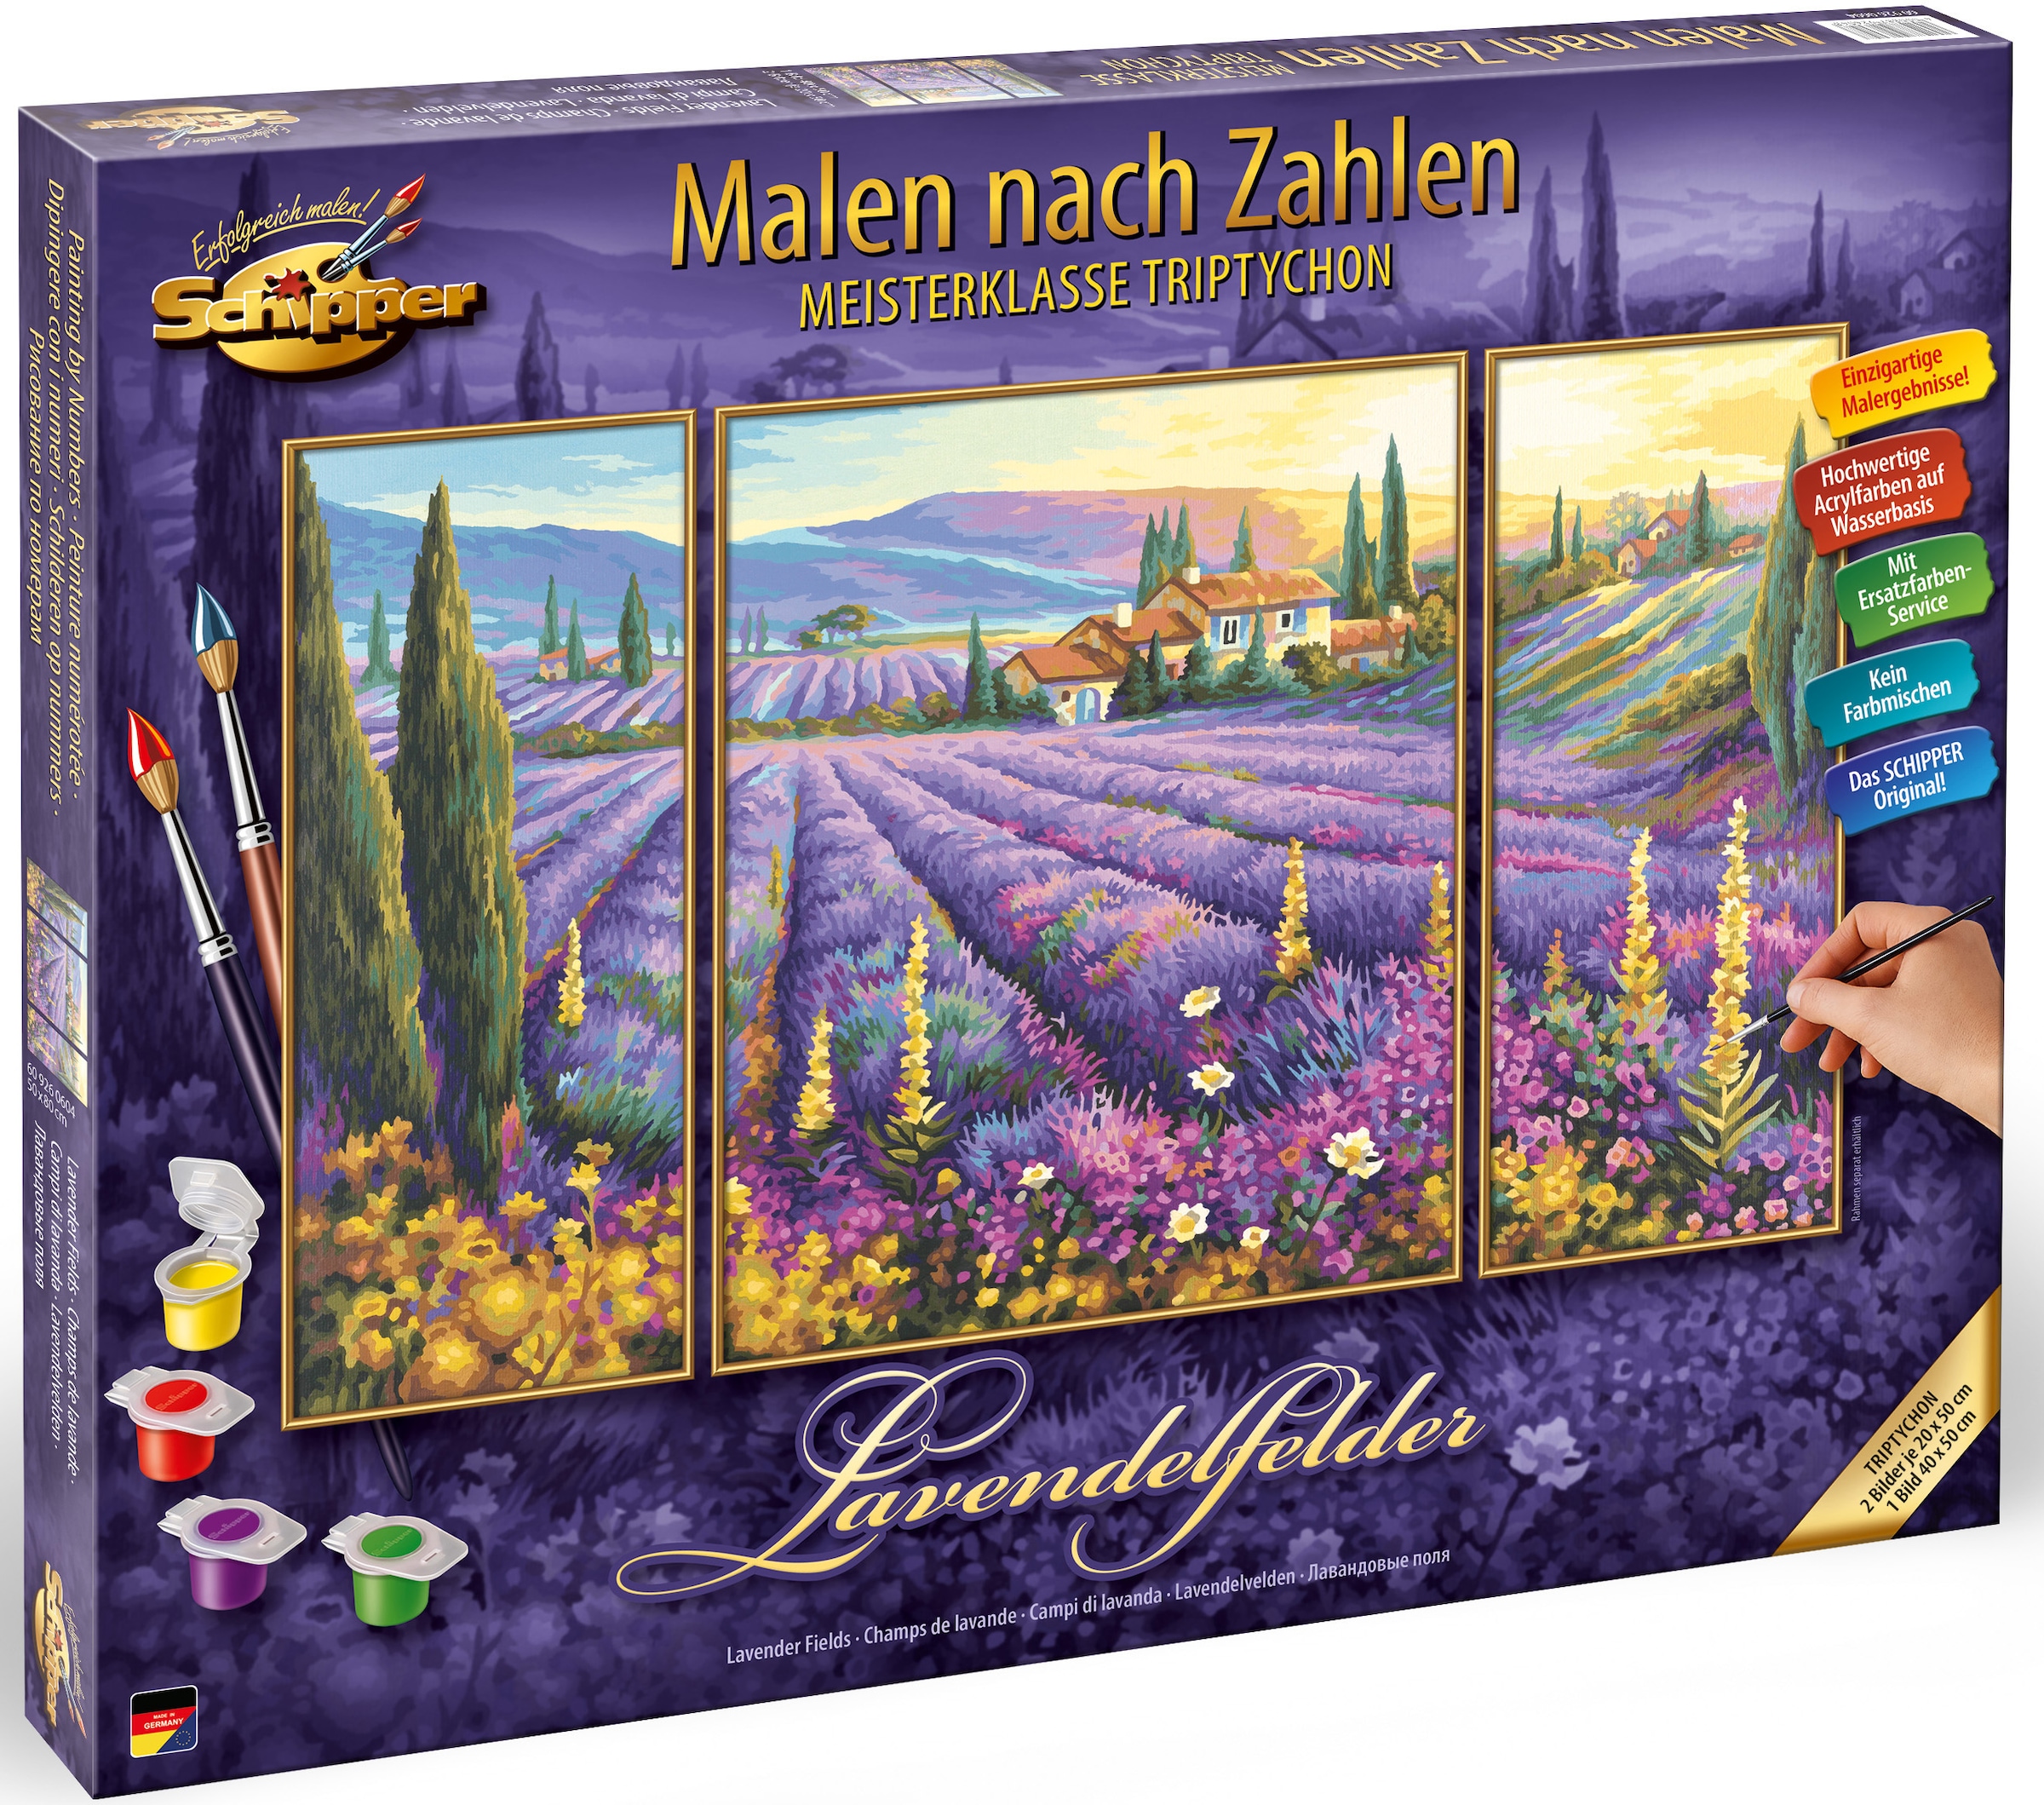 Made Lavendelfelder«, OTTO Triptychon »Meisterklasse nach online in - Malen | Schipper Zahlen Germany